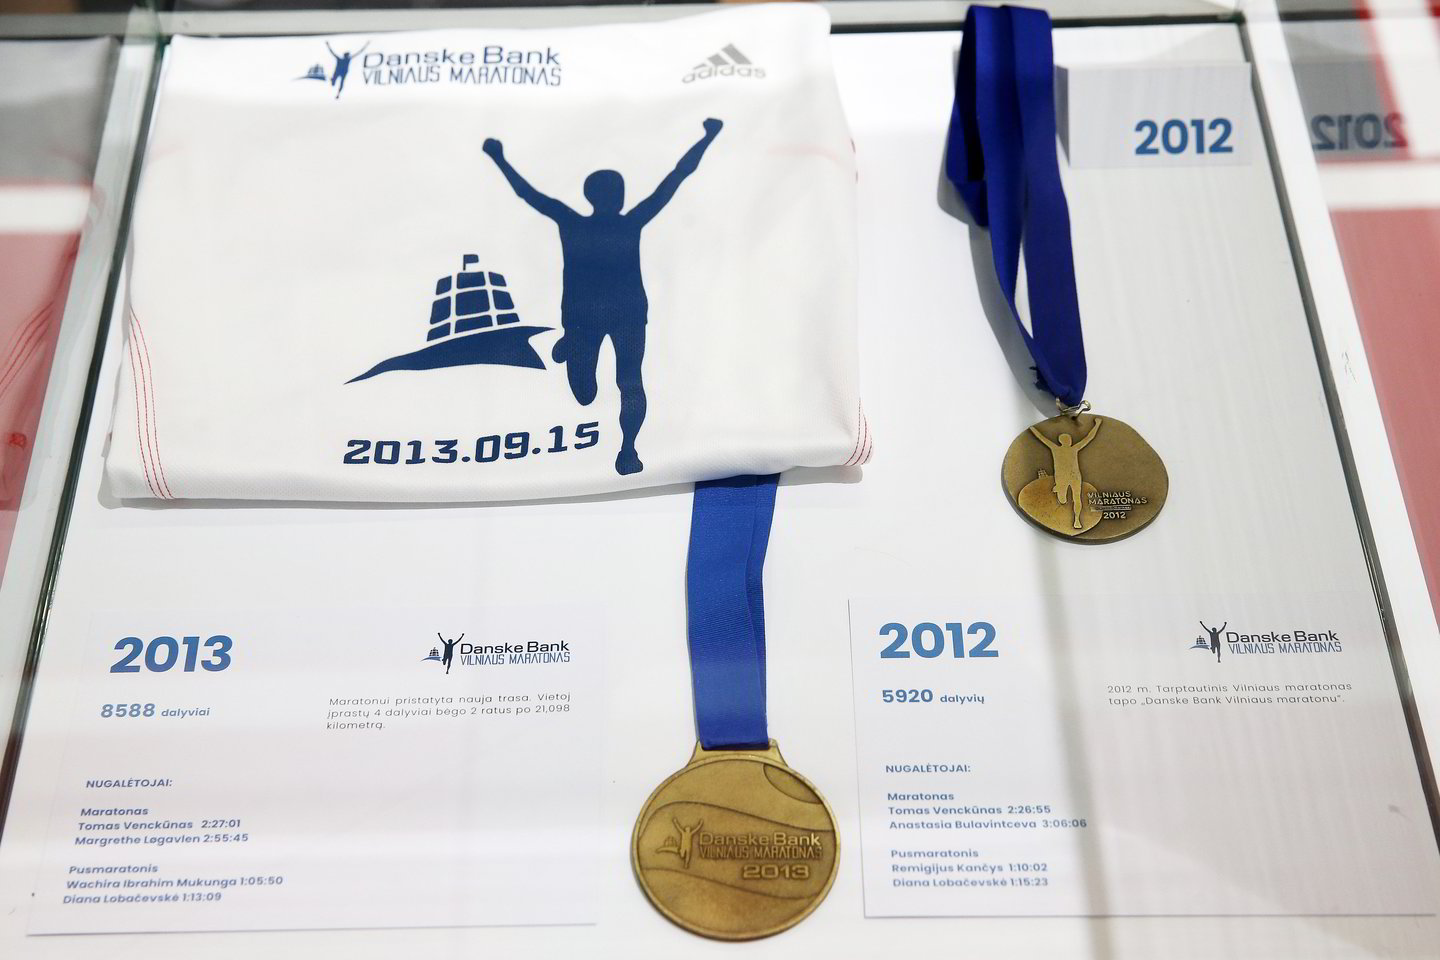 Diana Lobačevskė pristatė naujus Vilniaus maratono medalius.<br> R.Danisevičiaus nuotr.